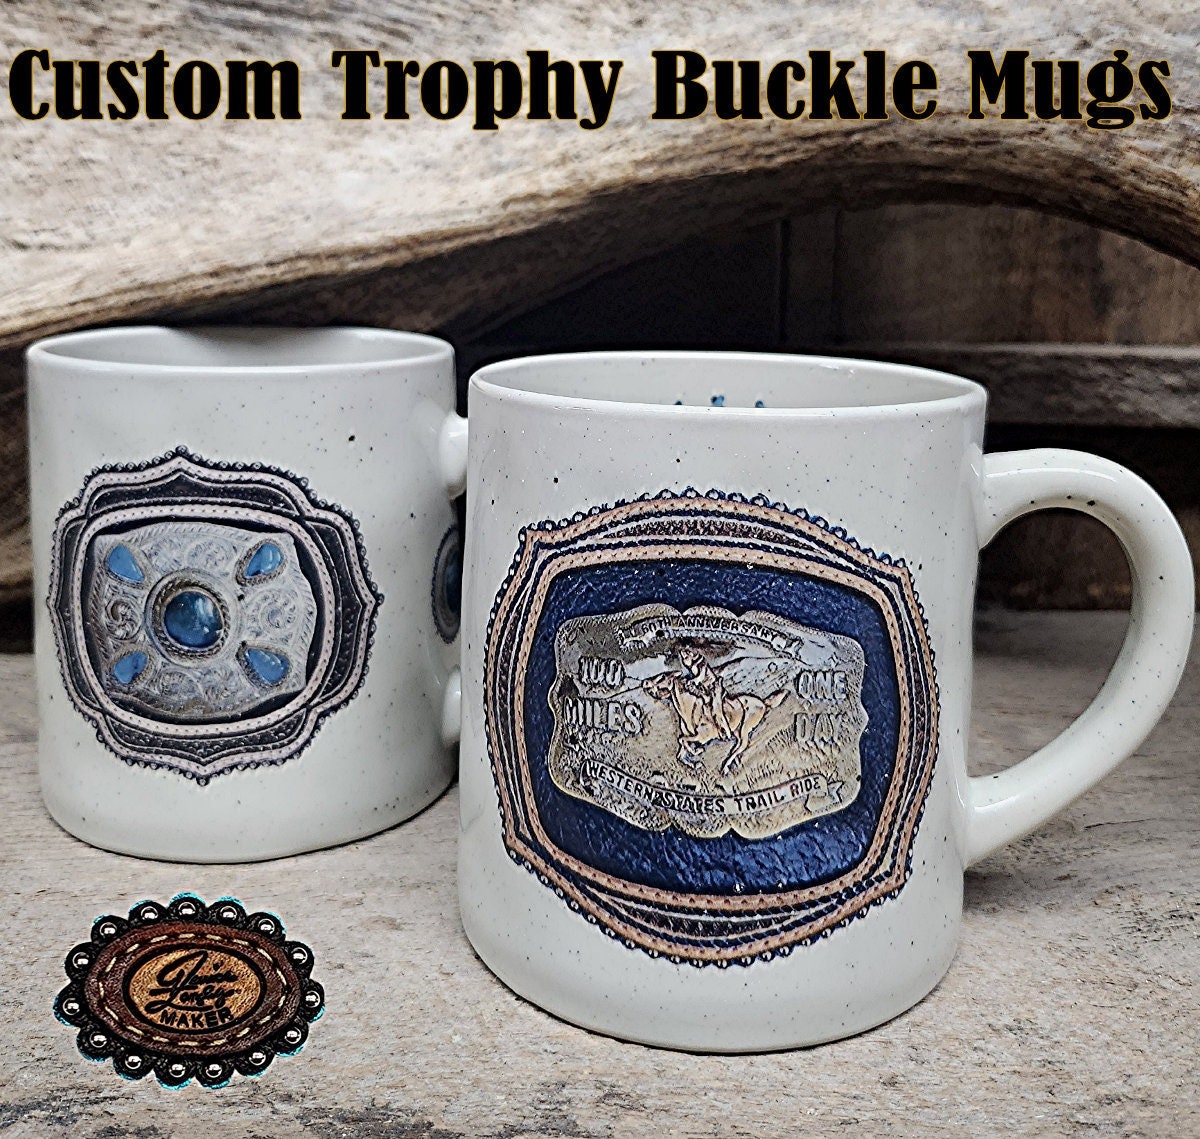 Buckle Mug -  Canada